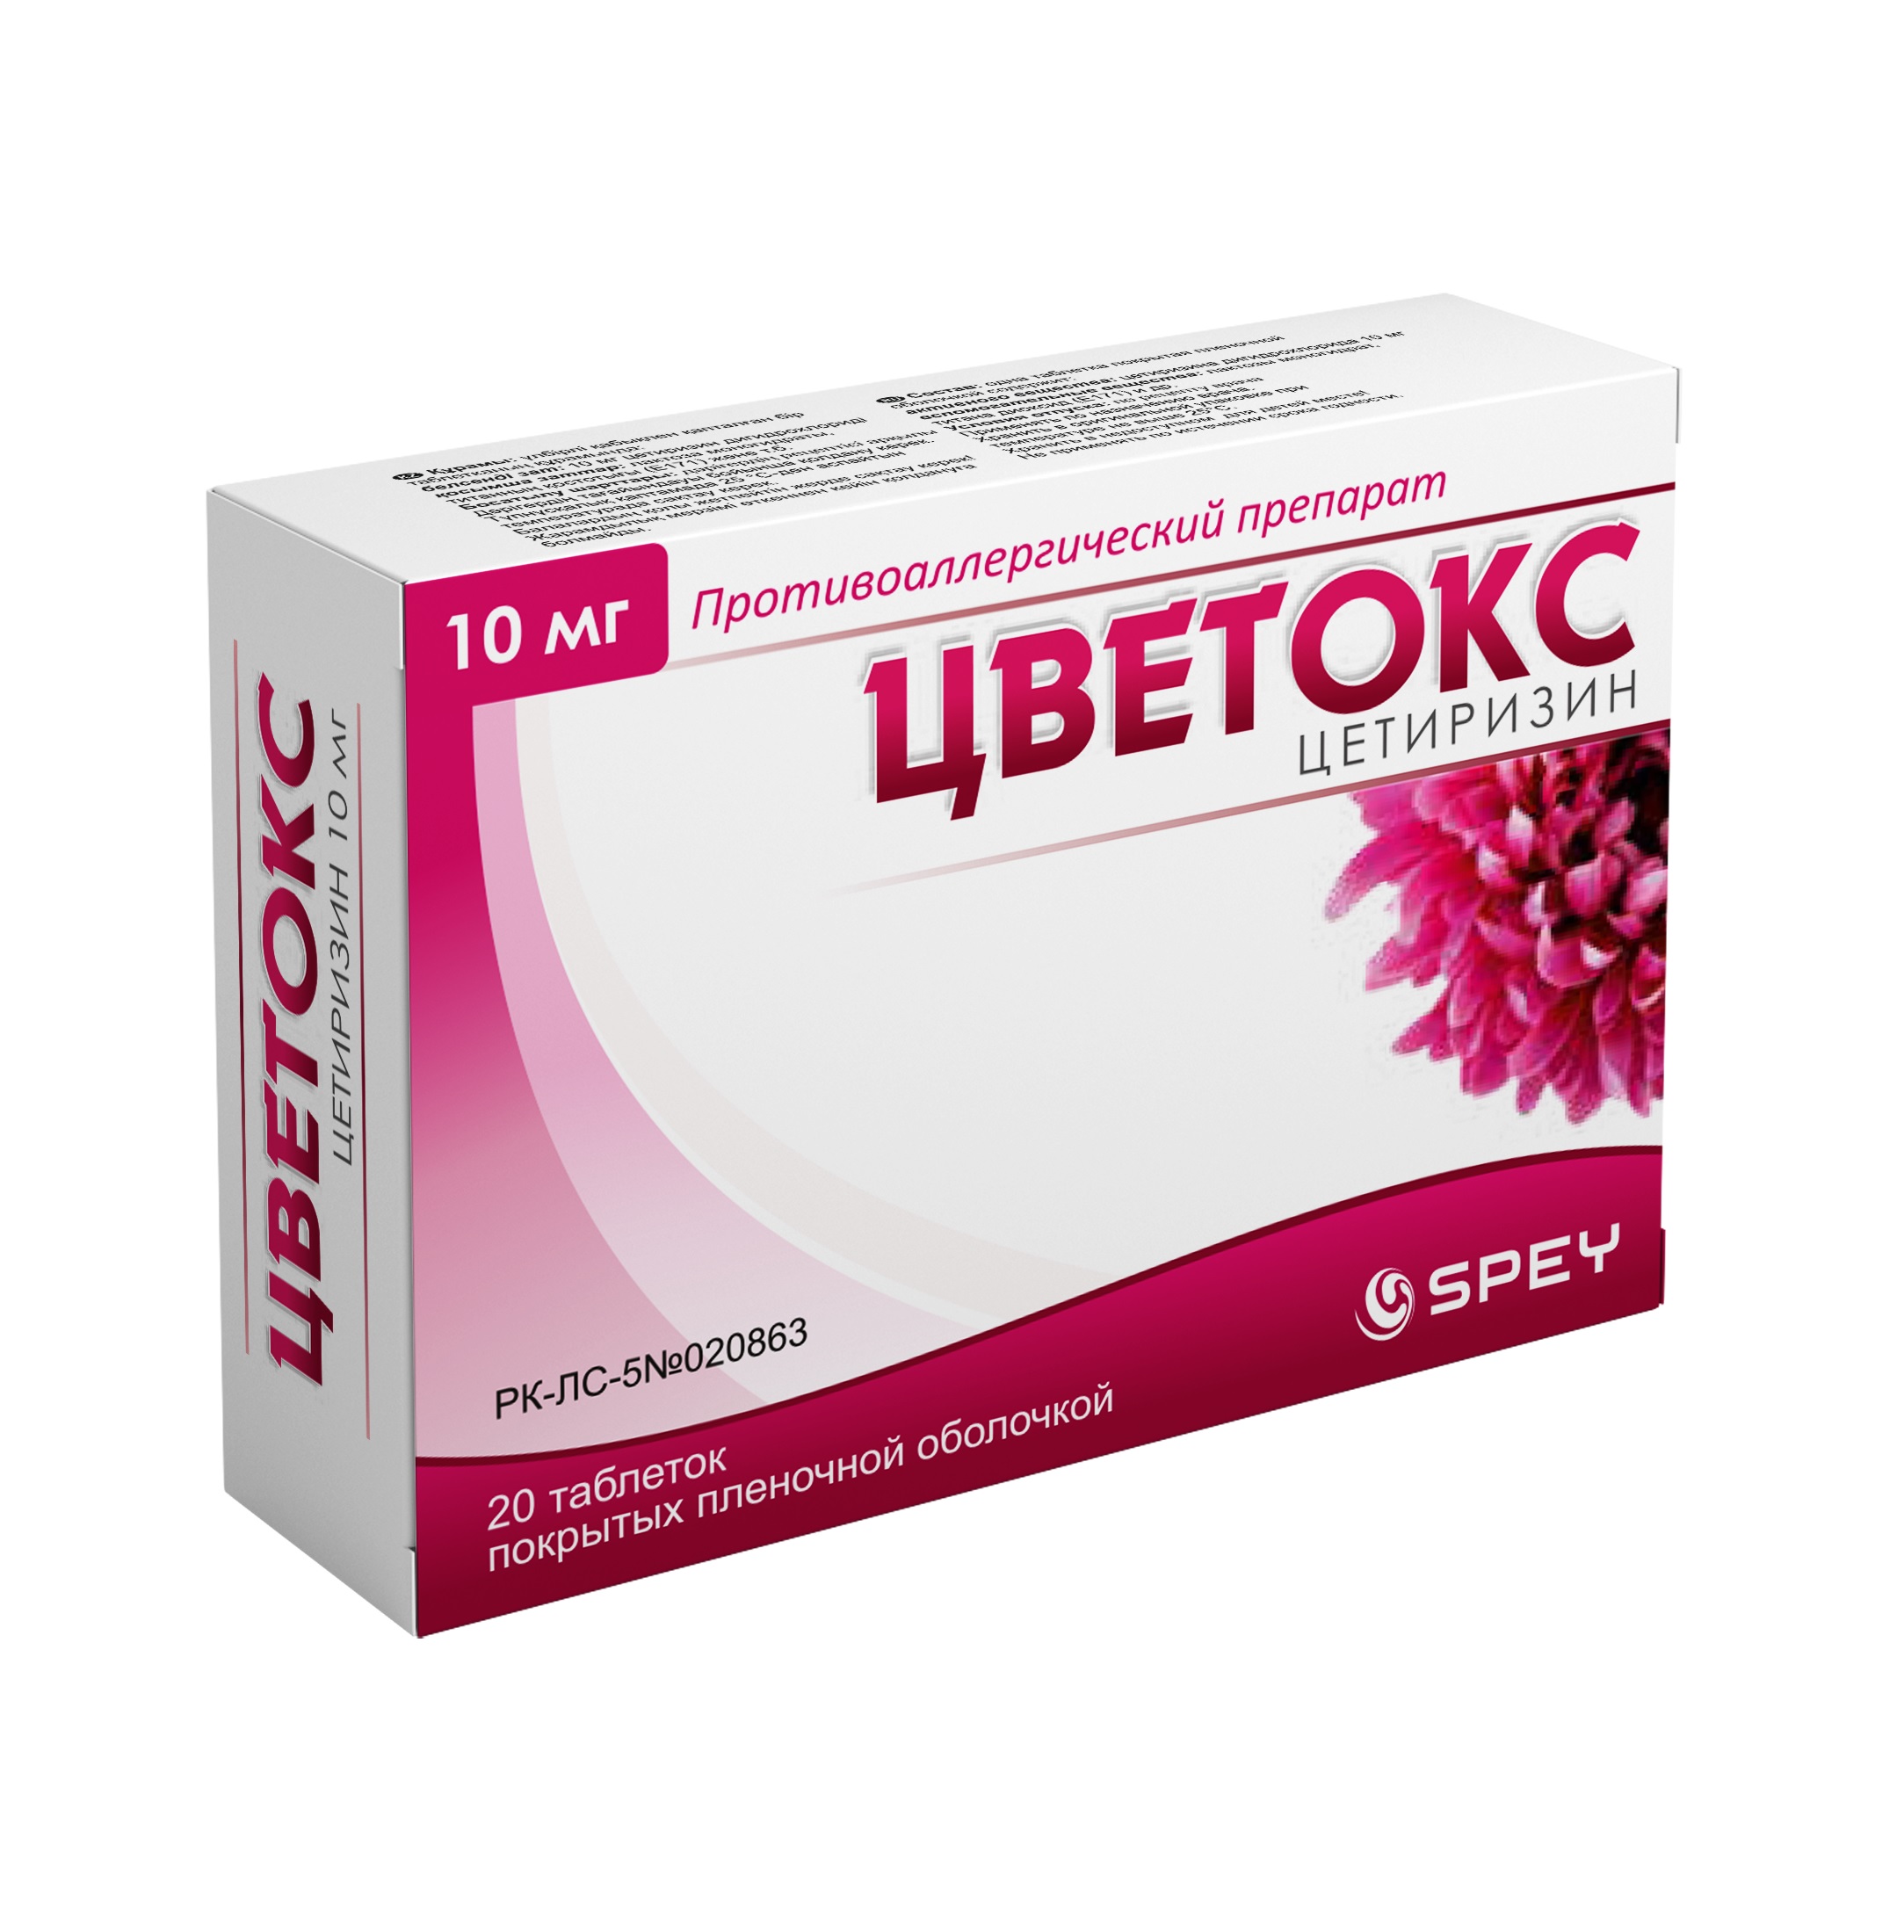 Зетринал сироп 5 мг/5 мл 100 мл  в Астана: цена в аптеках (0 .